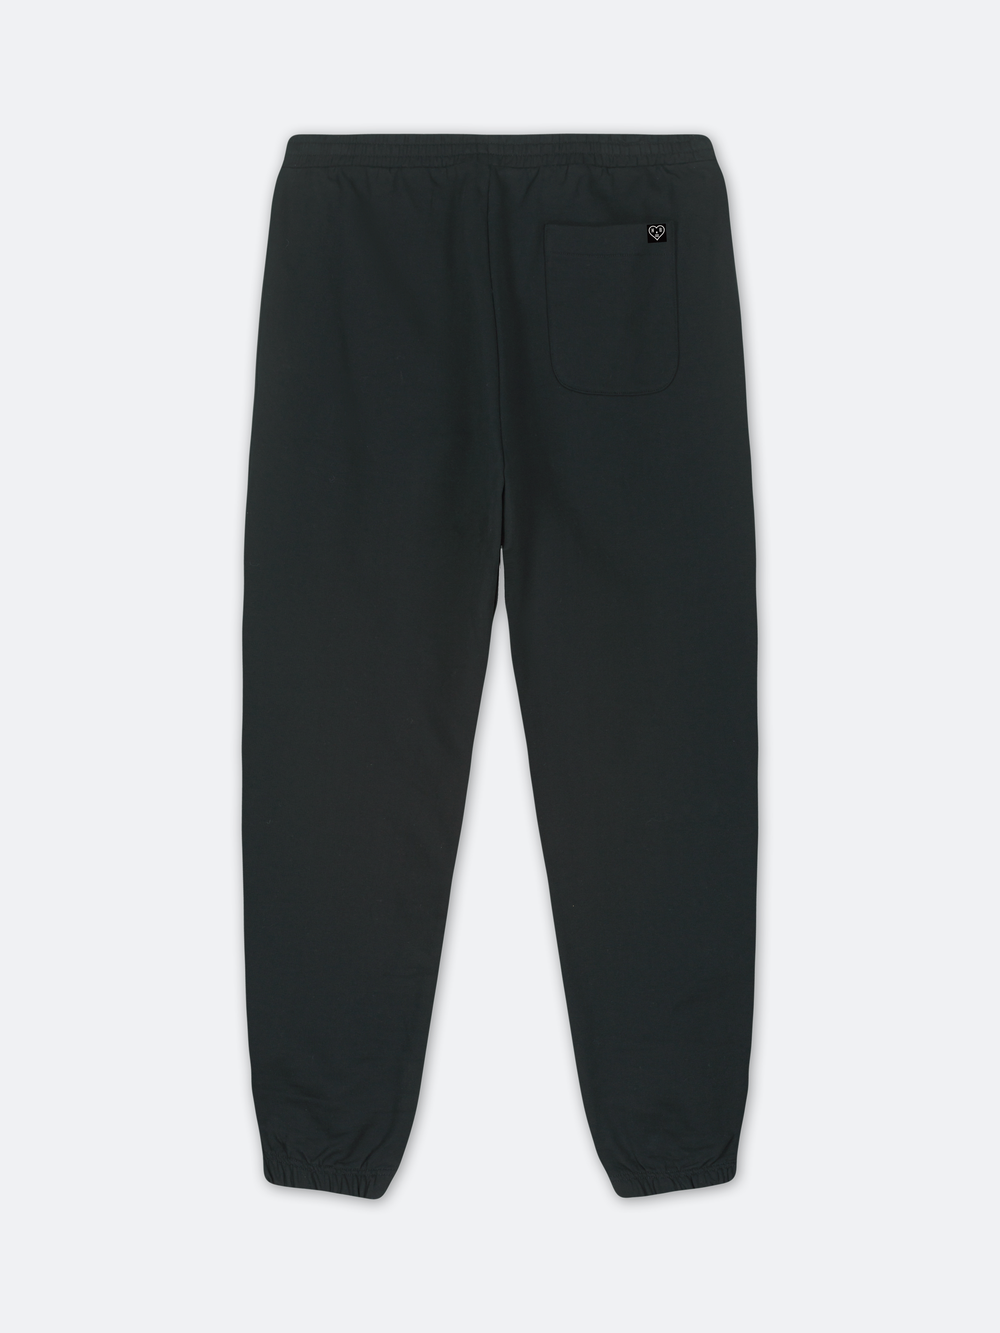 STENCIL SMALL PRESTIGE Sweat Pants (Black)